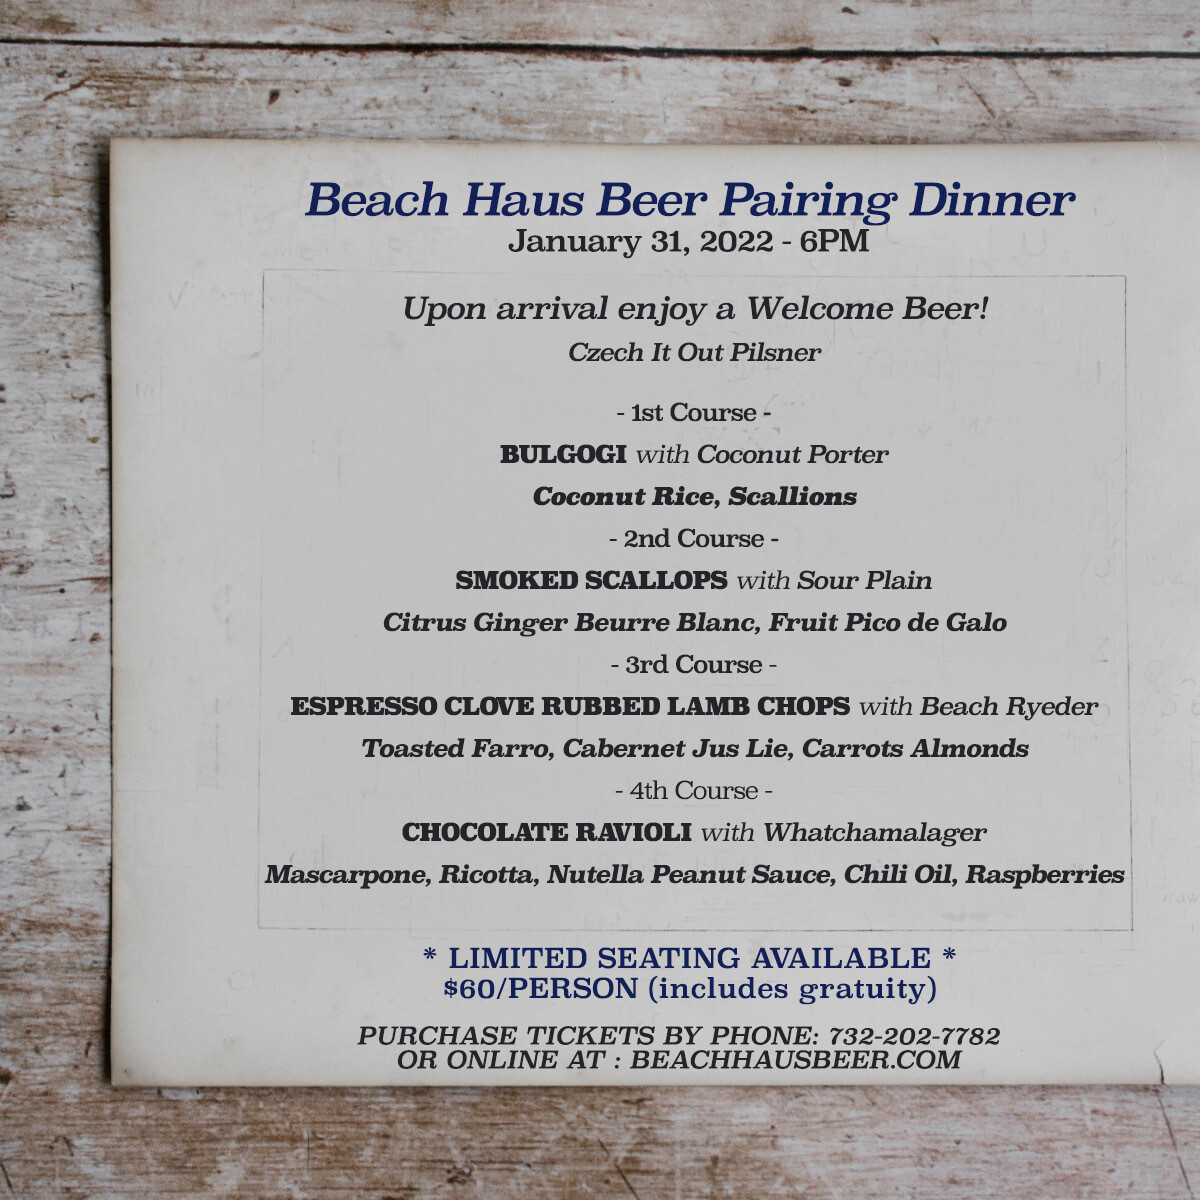 Beer Pairing Dinner Ticket - January 31, 2022